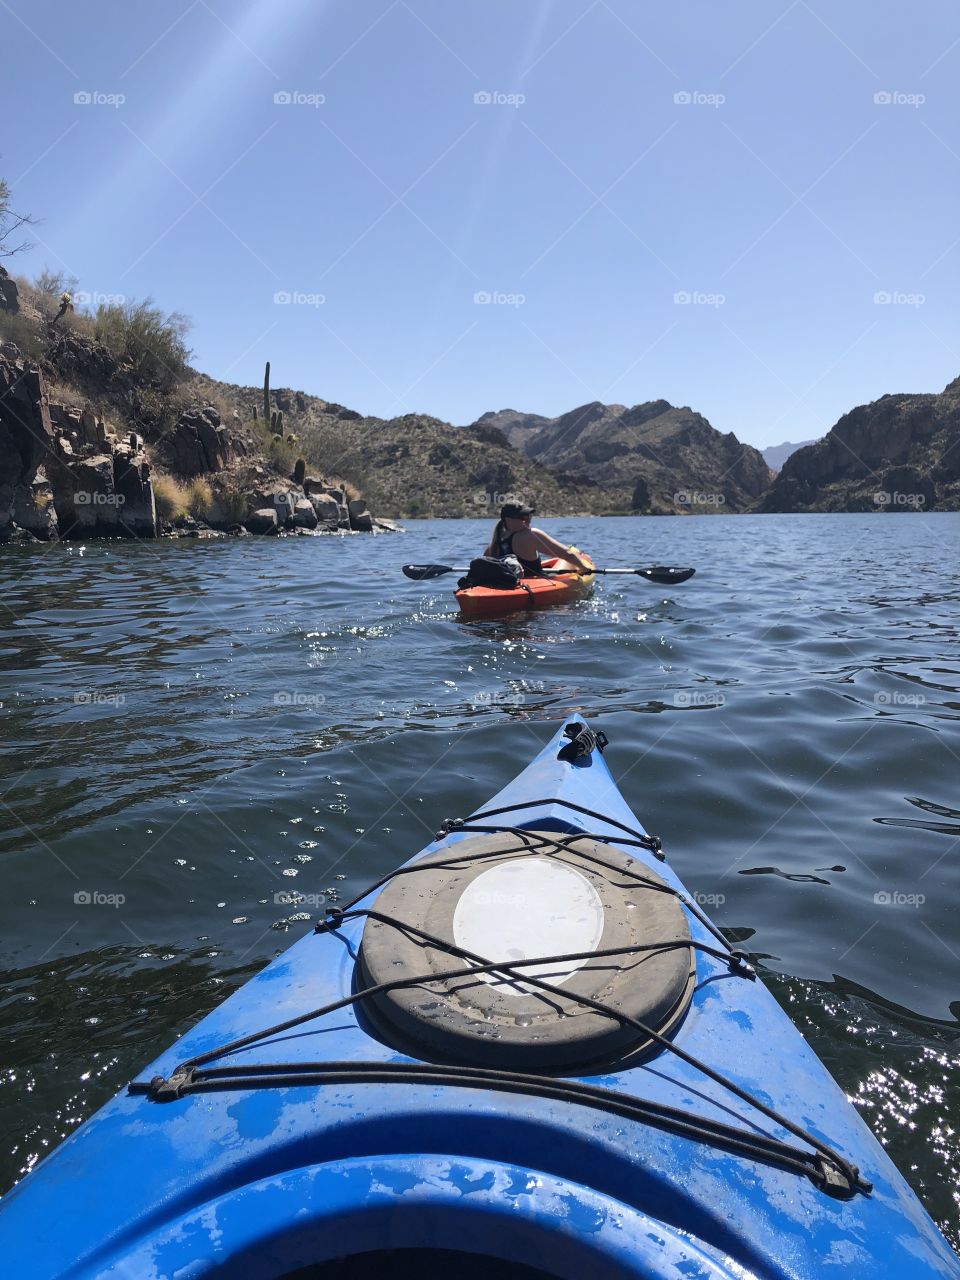 Kayaking on a lake in the desert of Arizona 